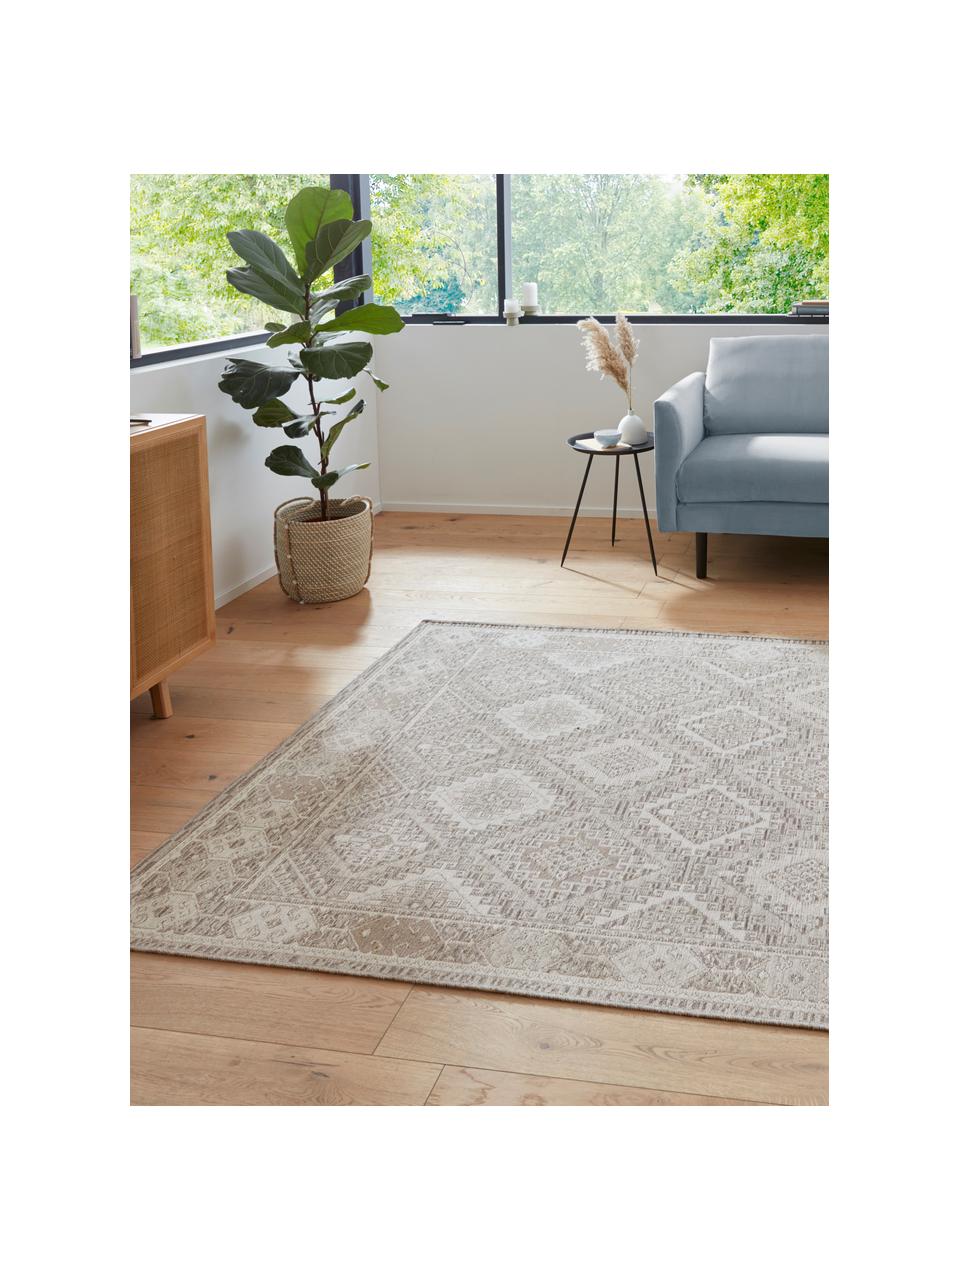 Teppich Lina mit Ethnomuster in Beige/Grau, 48% Jute, 43% Wolle, 9% Viskose, Beige, Grau, B 160 x L 230 cm (Größe M)